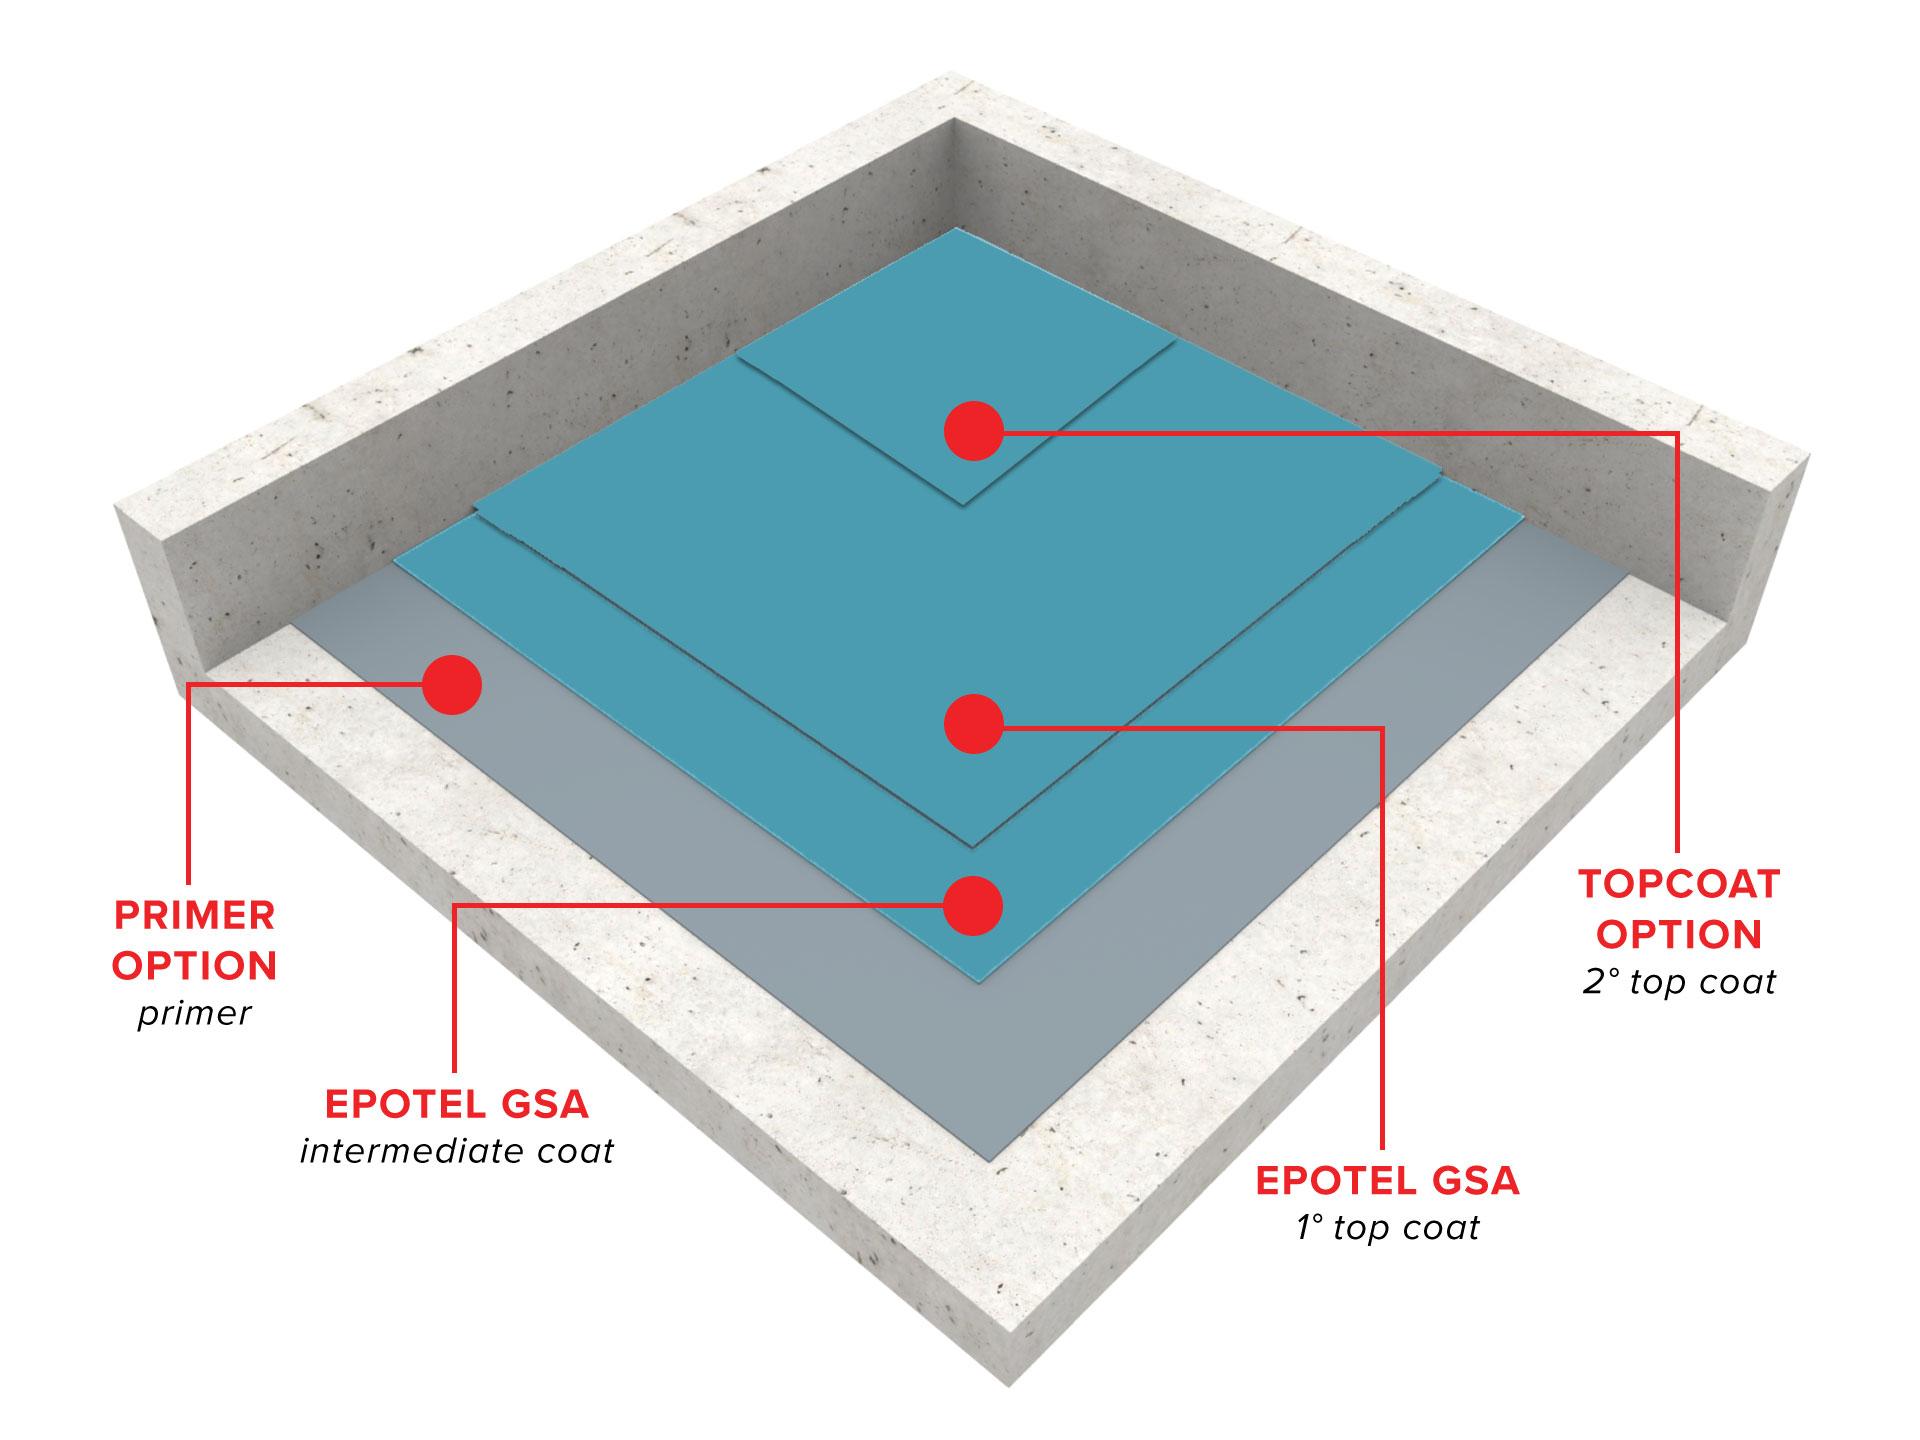 epotel-gsa-floor-coating-system-warehouse-grade1567611625.jpg